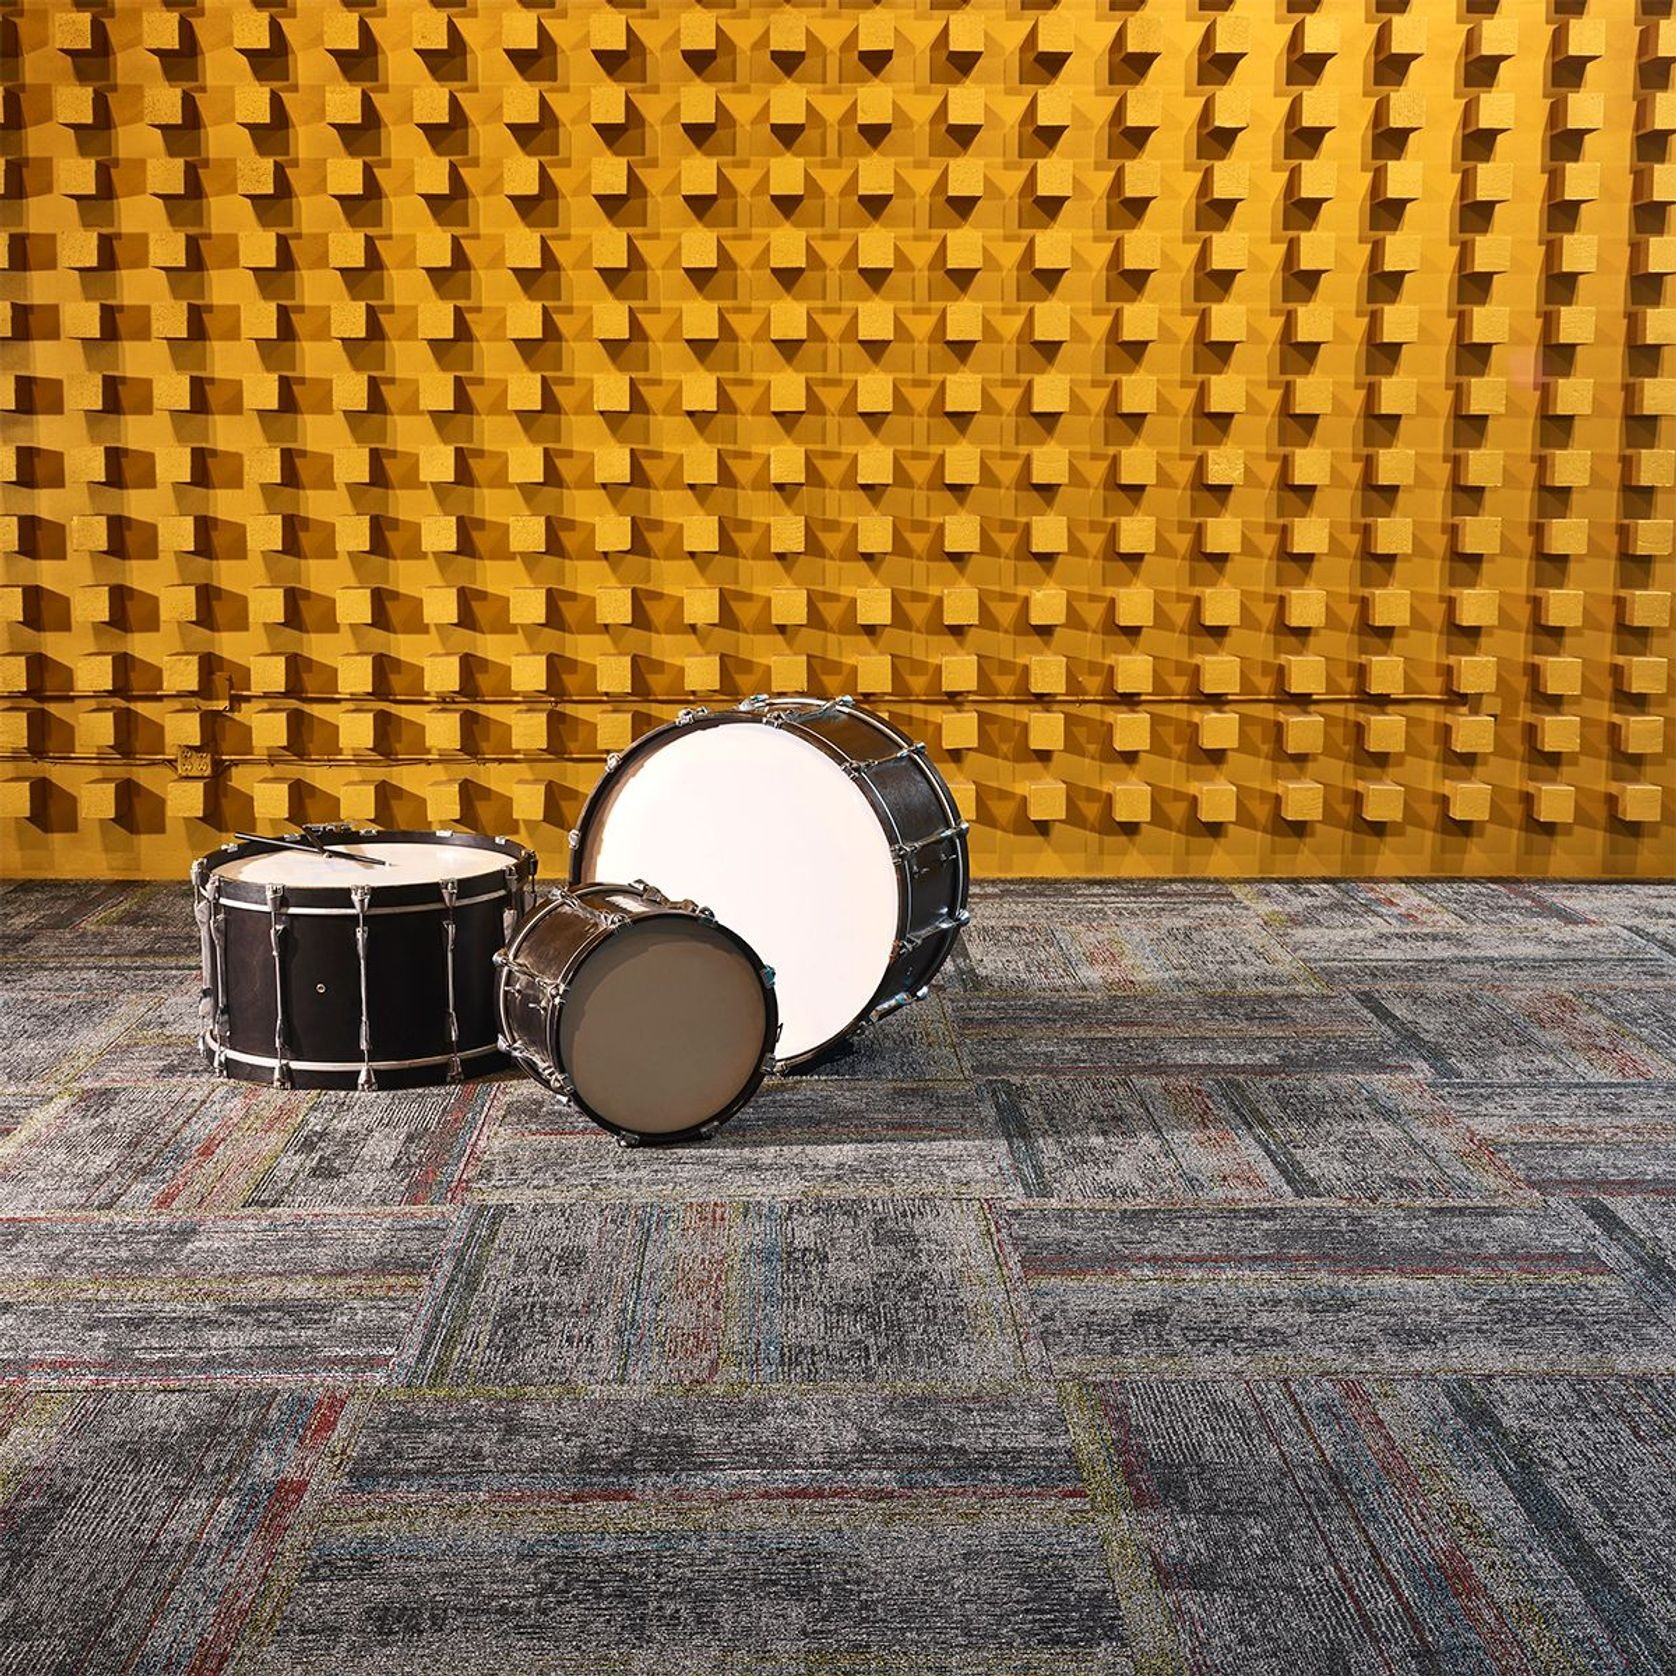 Drumline Carpet Tile by Bentley gallery detail image